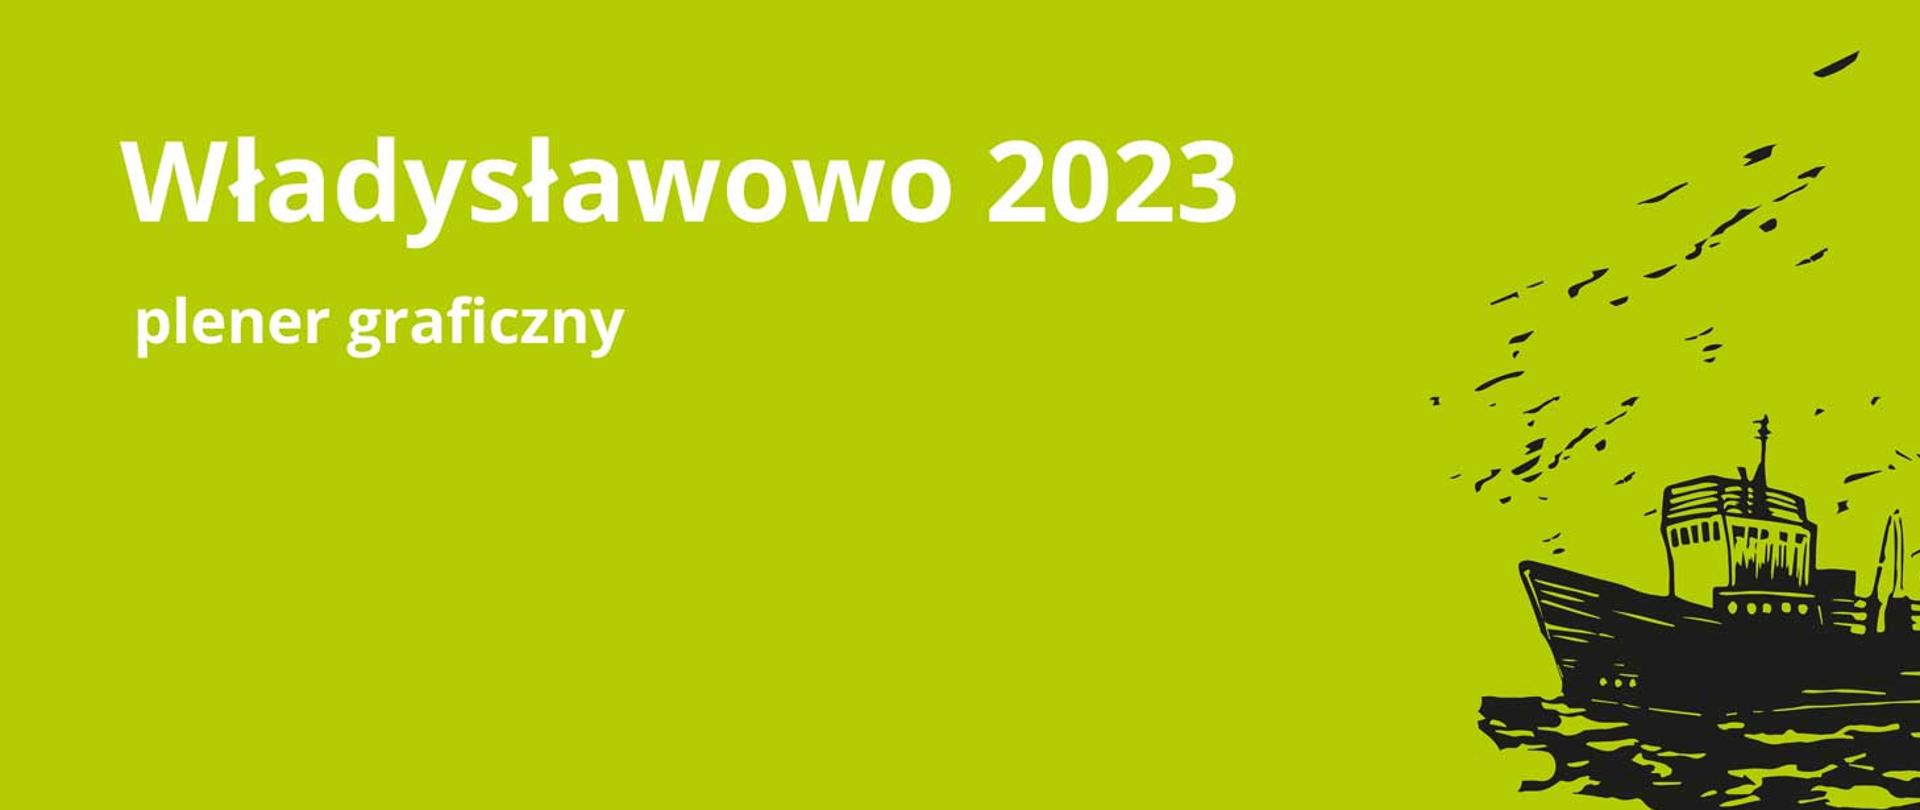 Baner napis Władysławowo 2023 plener graficzny, grafika kutra rybackiego